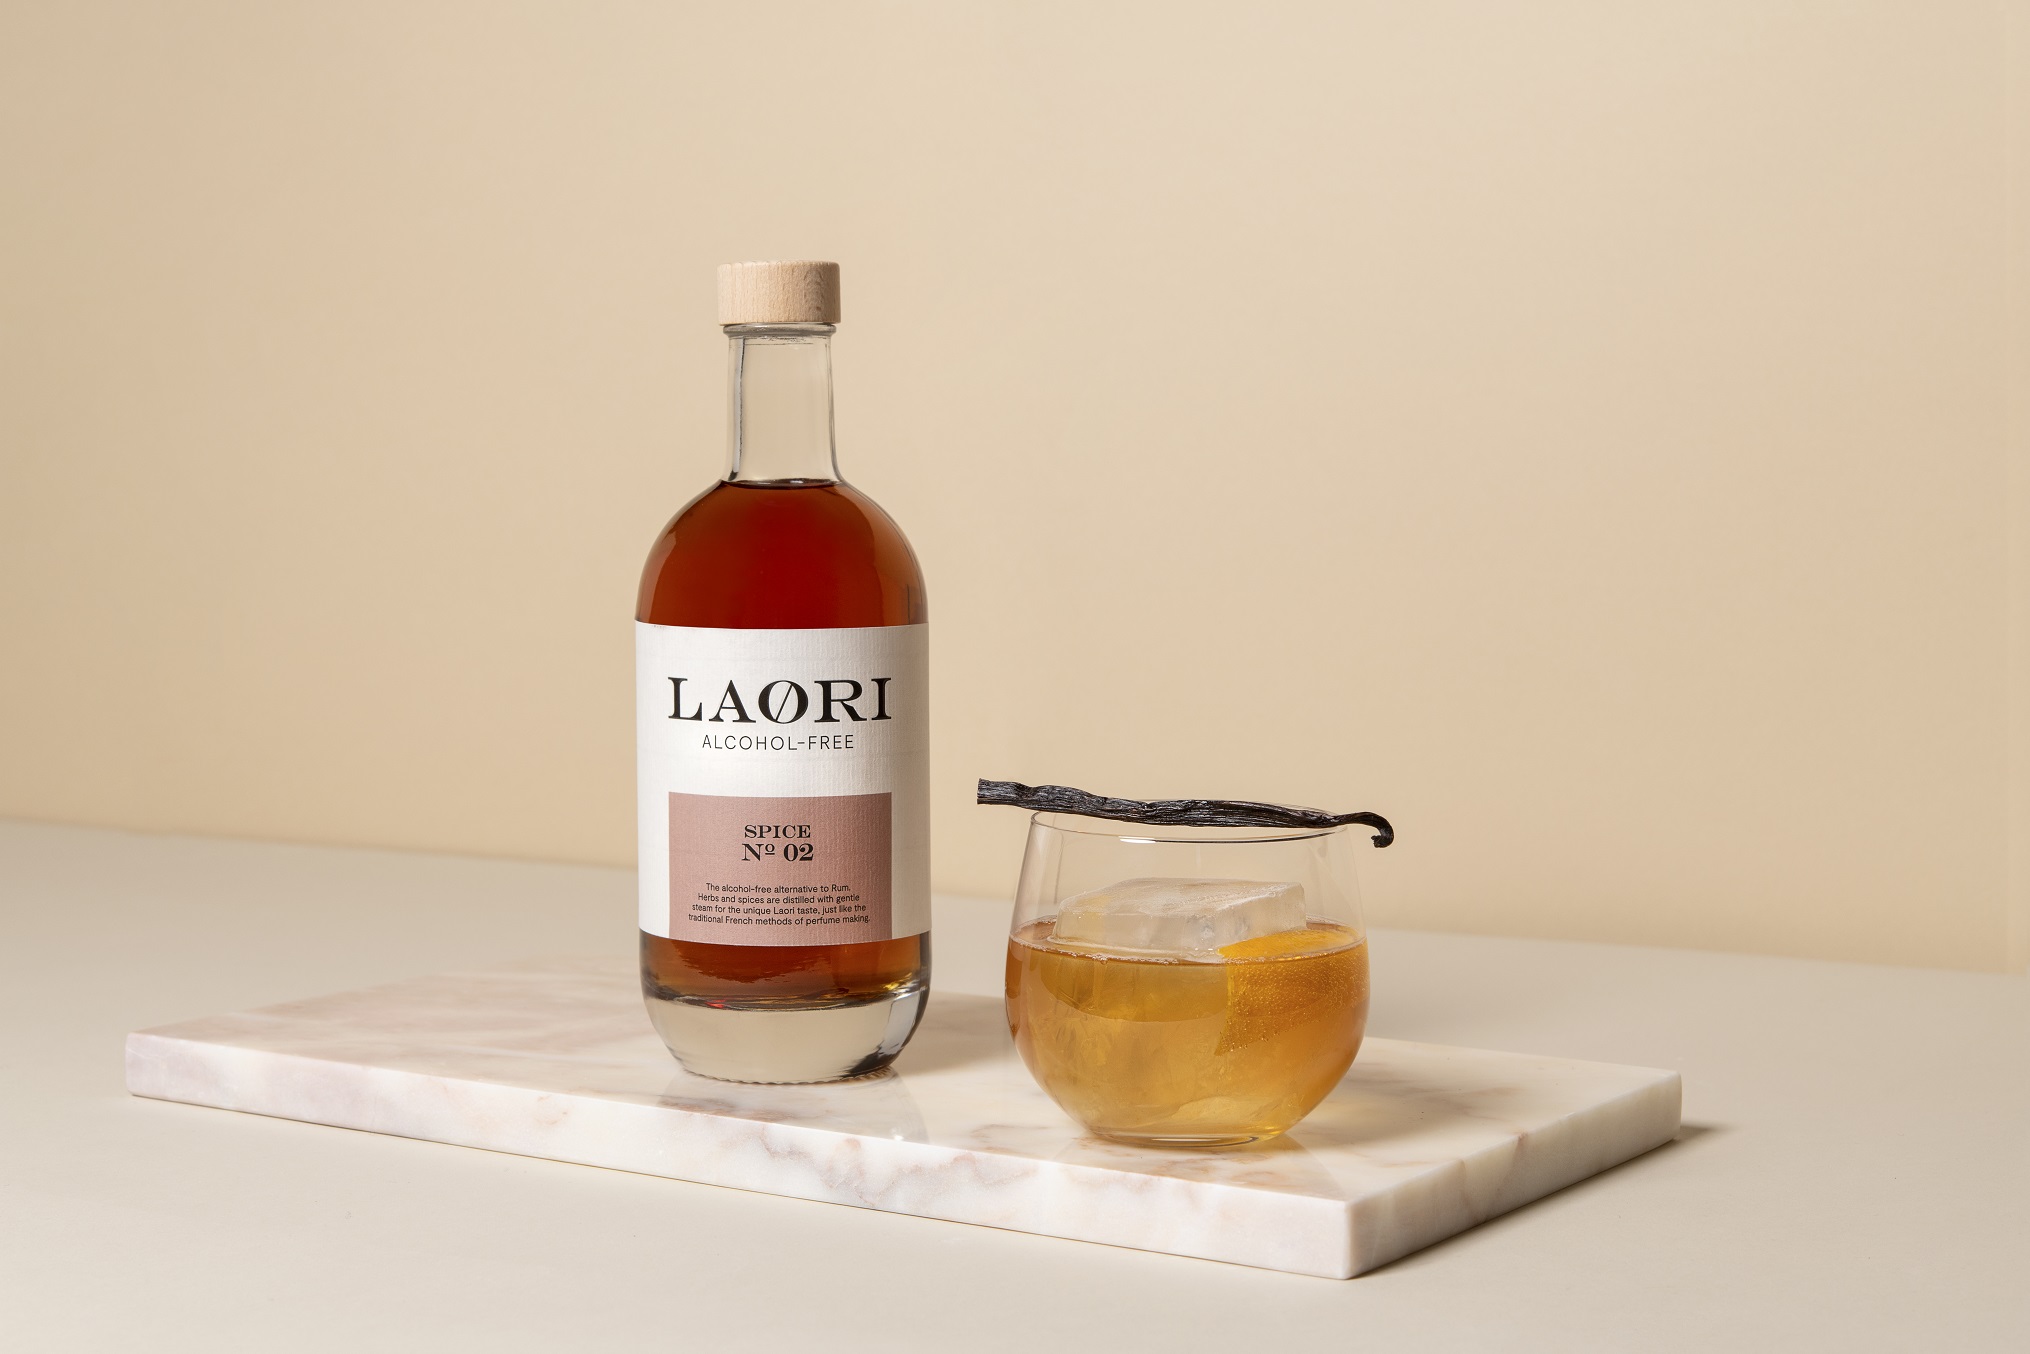 Laori Spice No. 2 - alkoholfrei - 0,5l